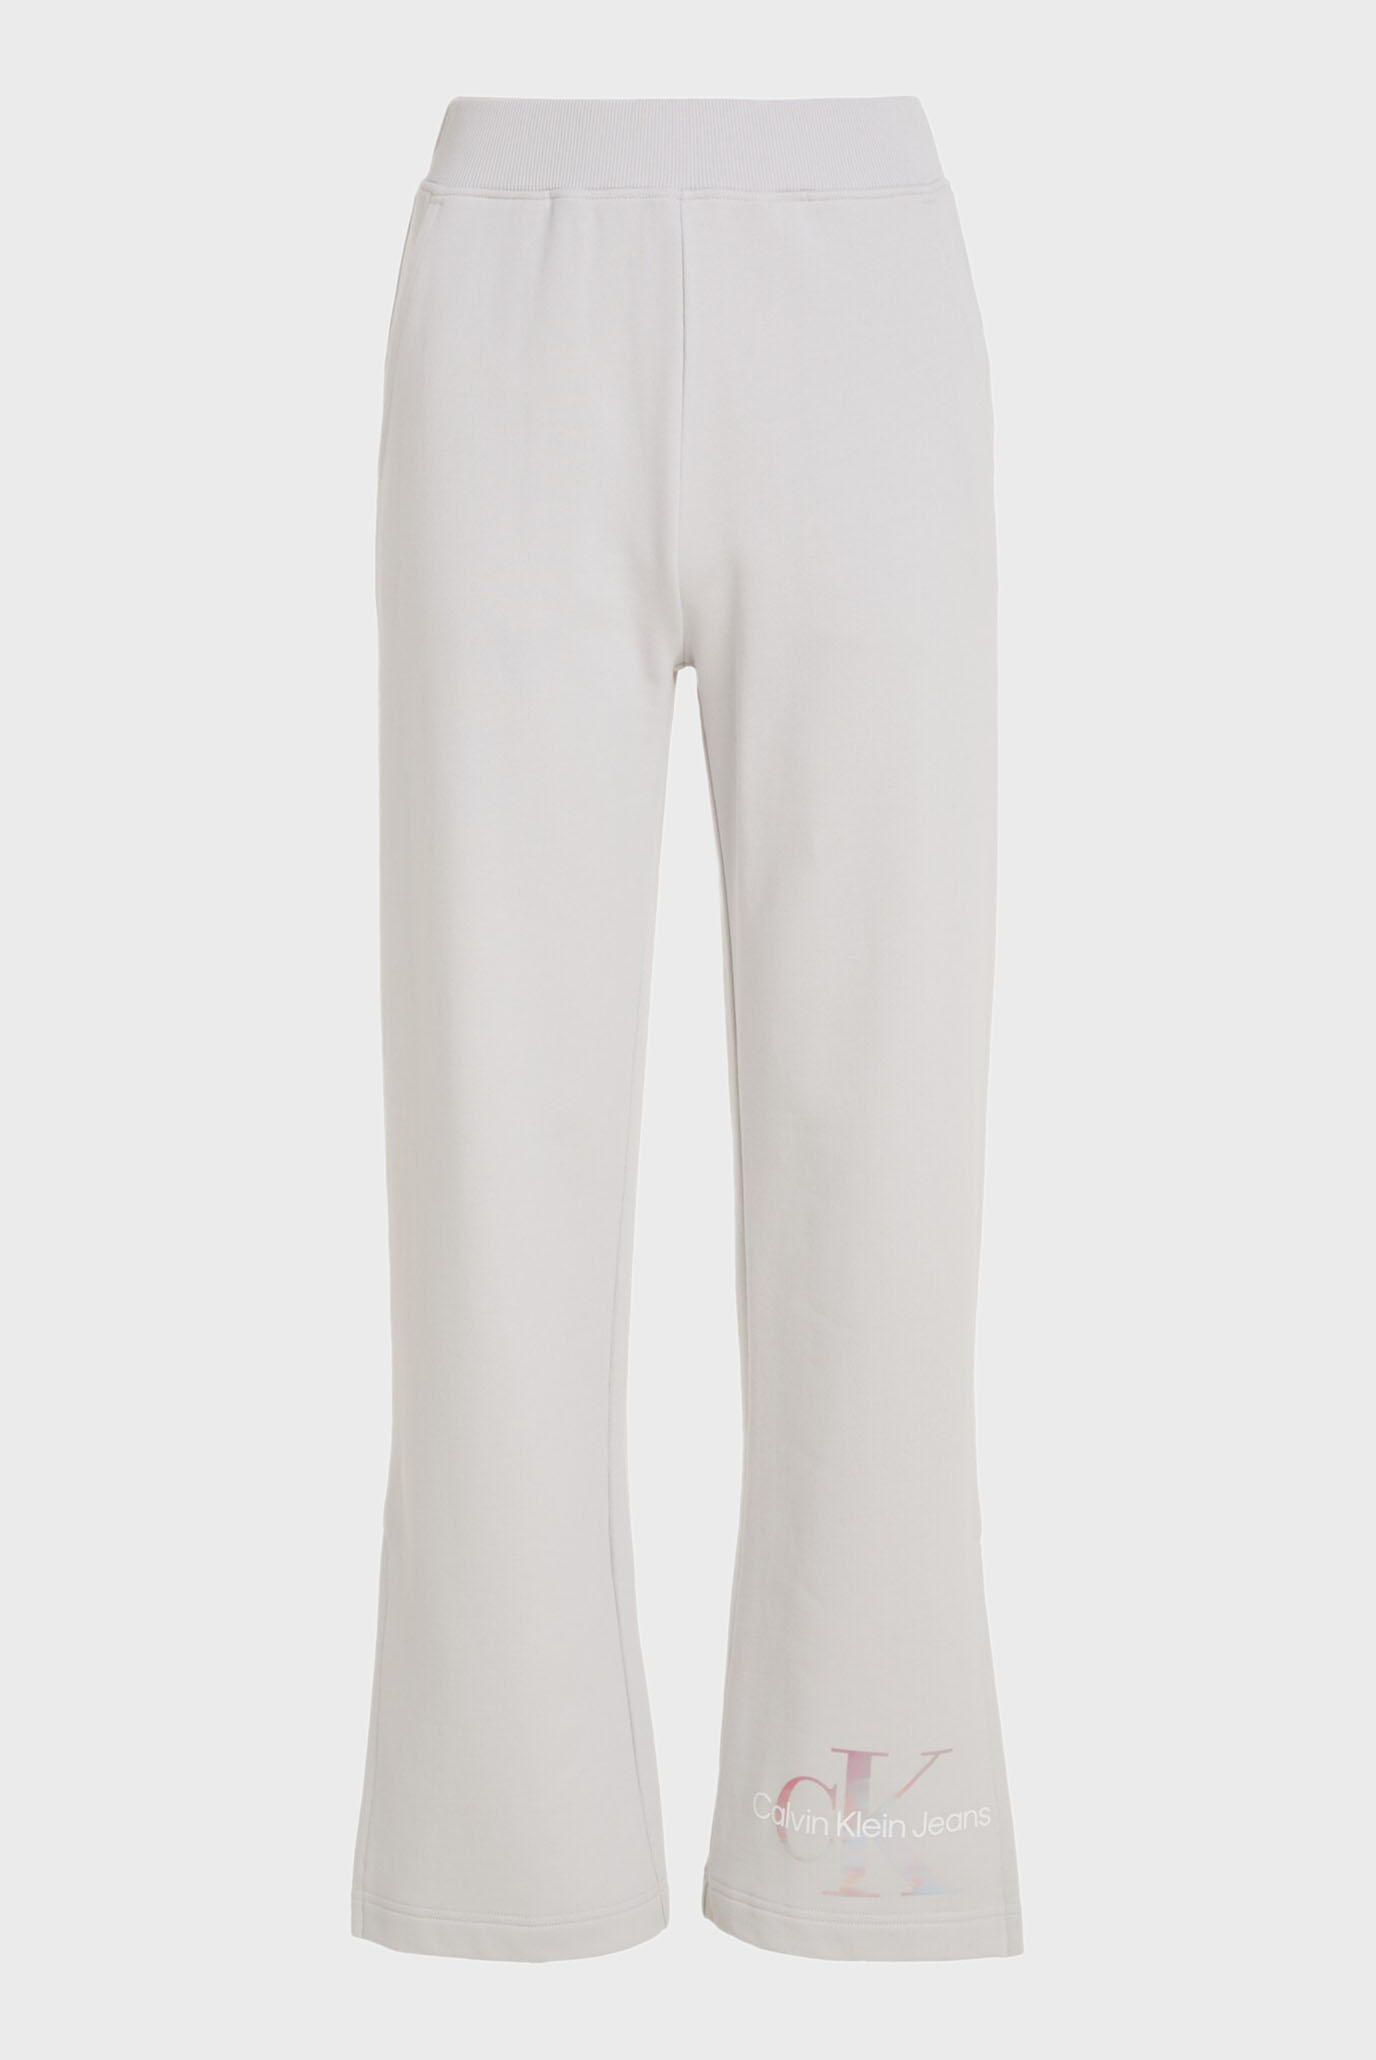 Жіночі світло-сірі спортивні штани DIFFUSED MONOLOGO JOG 1